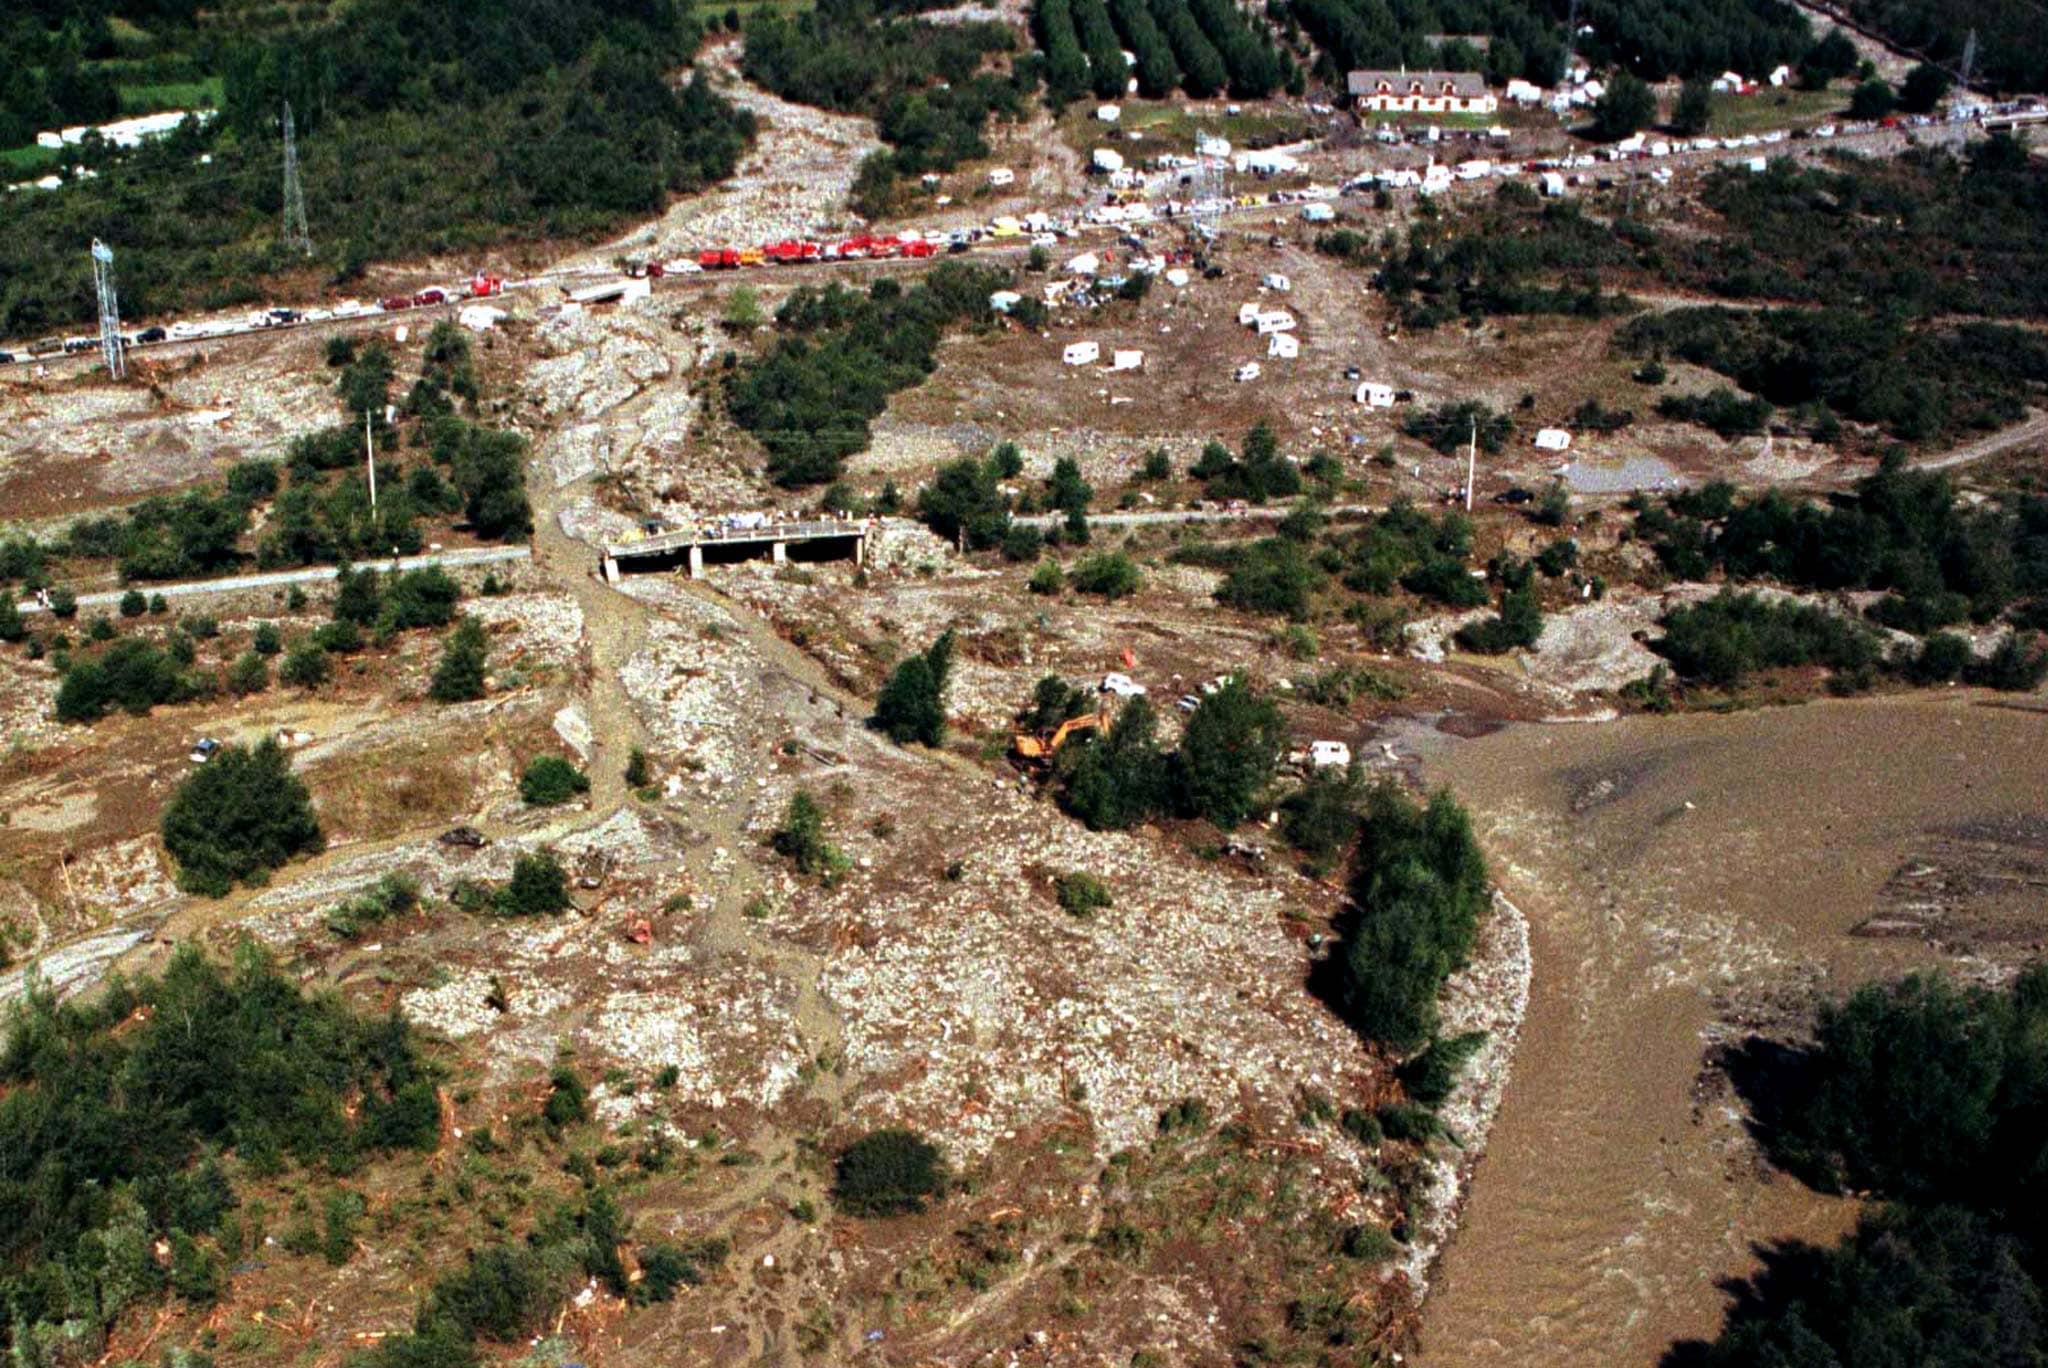 Vistas del terreno que ocupaba el camping de Las Nieves en Biescas, asolado por las inundaciones que causaron 87 muertos.